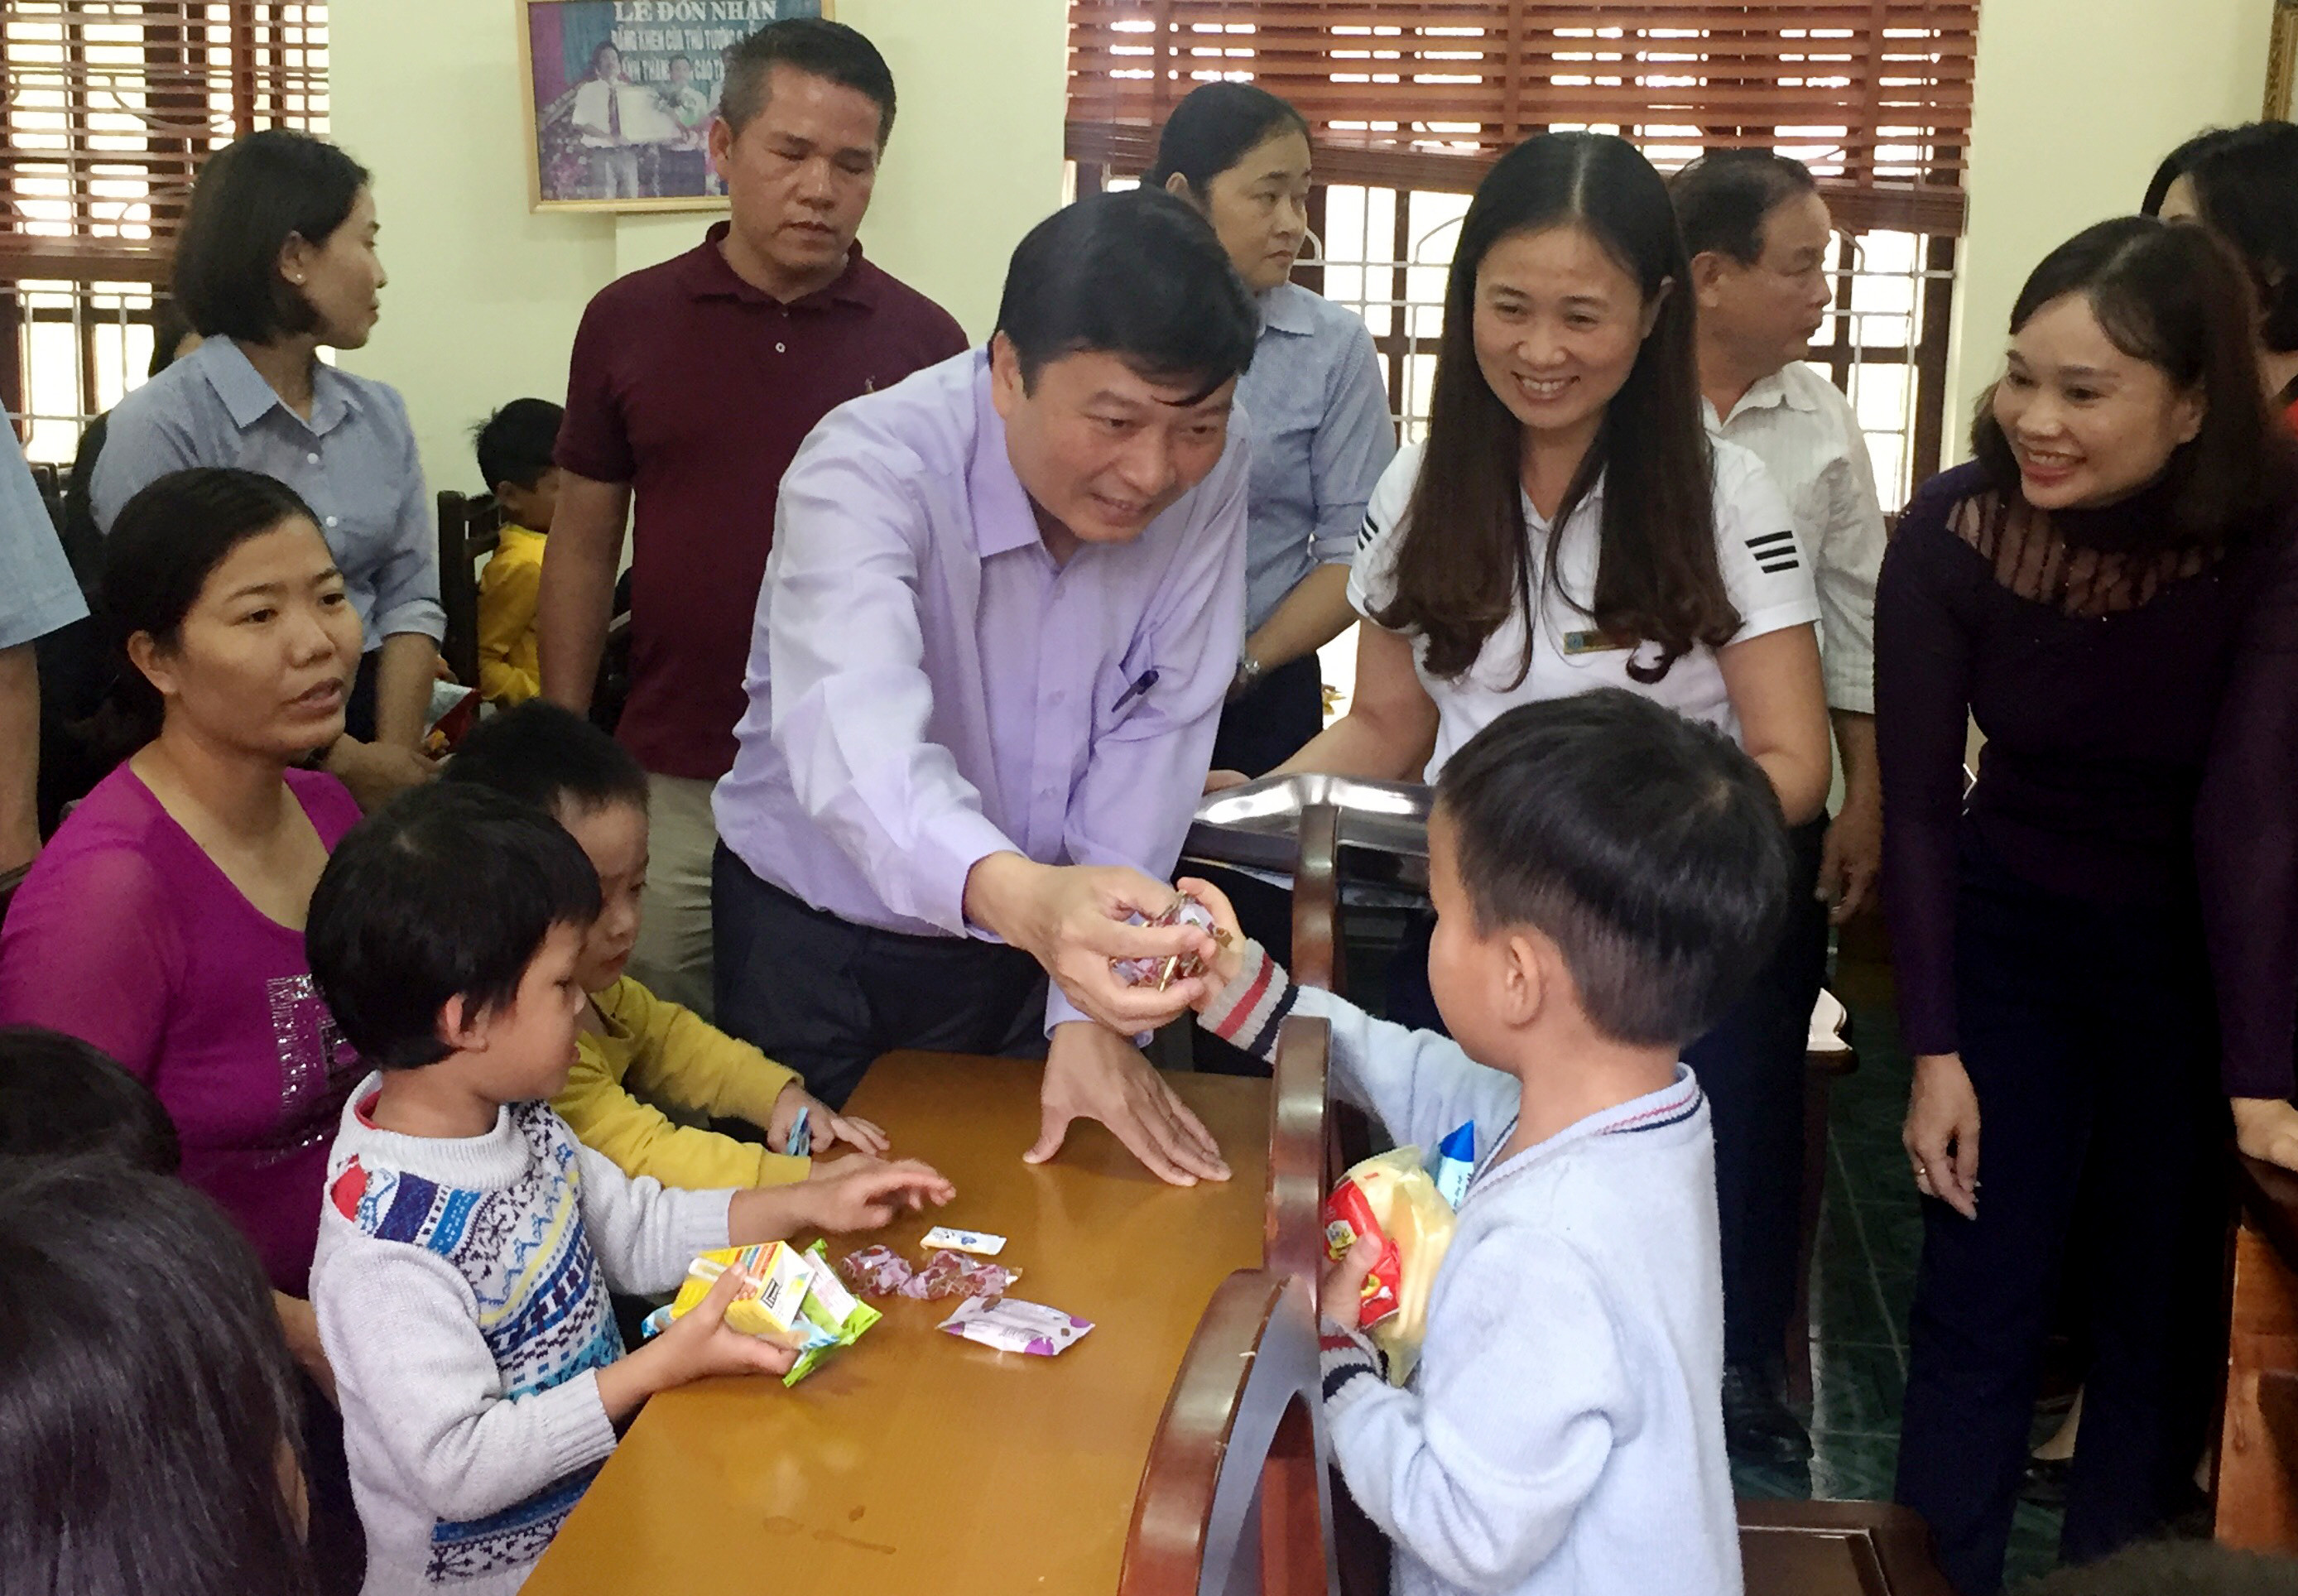 Đồng chí Lê Hồng Vinh trao quà và bánh kẹo cho trẻ em tàn tật, mồ côi tại Trung tâm công tác xã hội Nghệ An. Ảnh: 